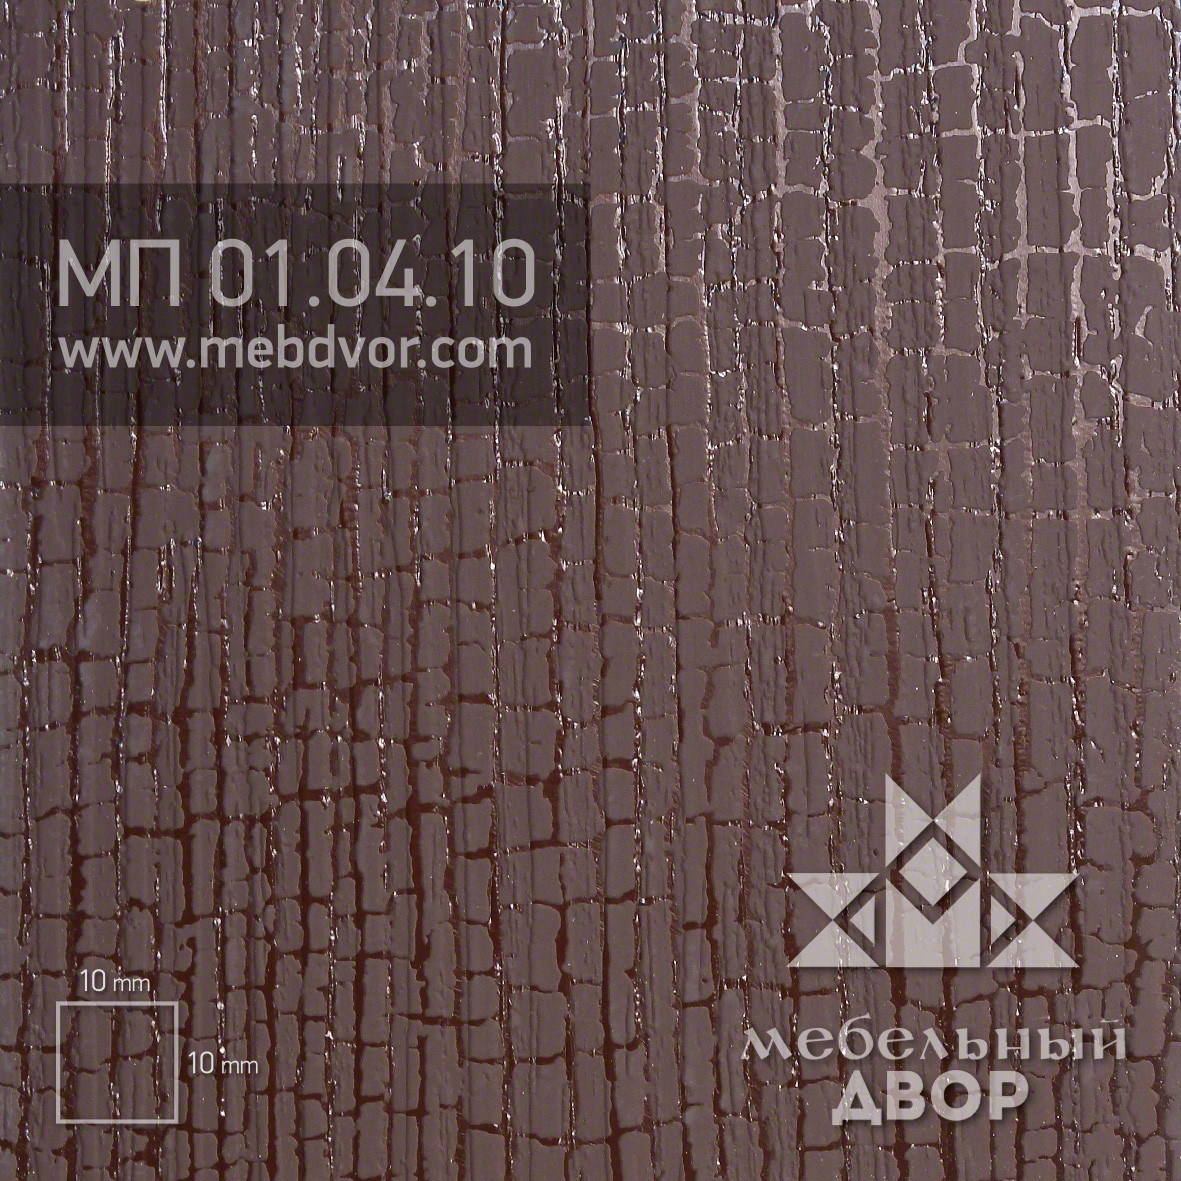 Фасад в пластике HPL МП  01.04.10 (темно-коричневый винтаж)